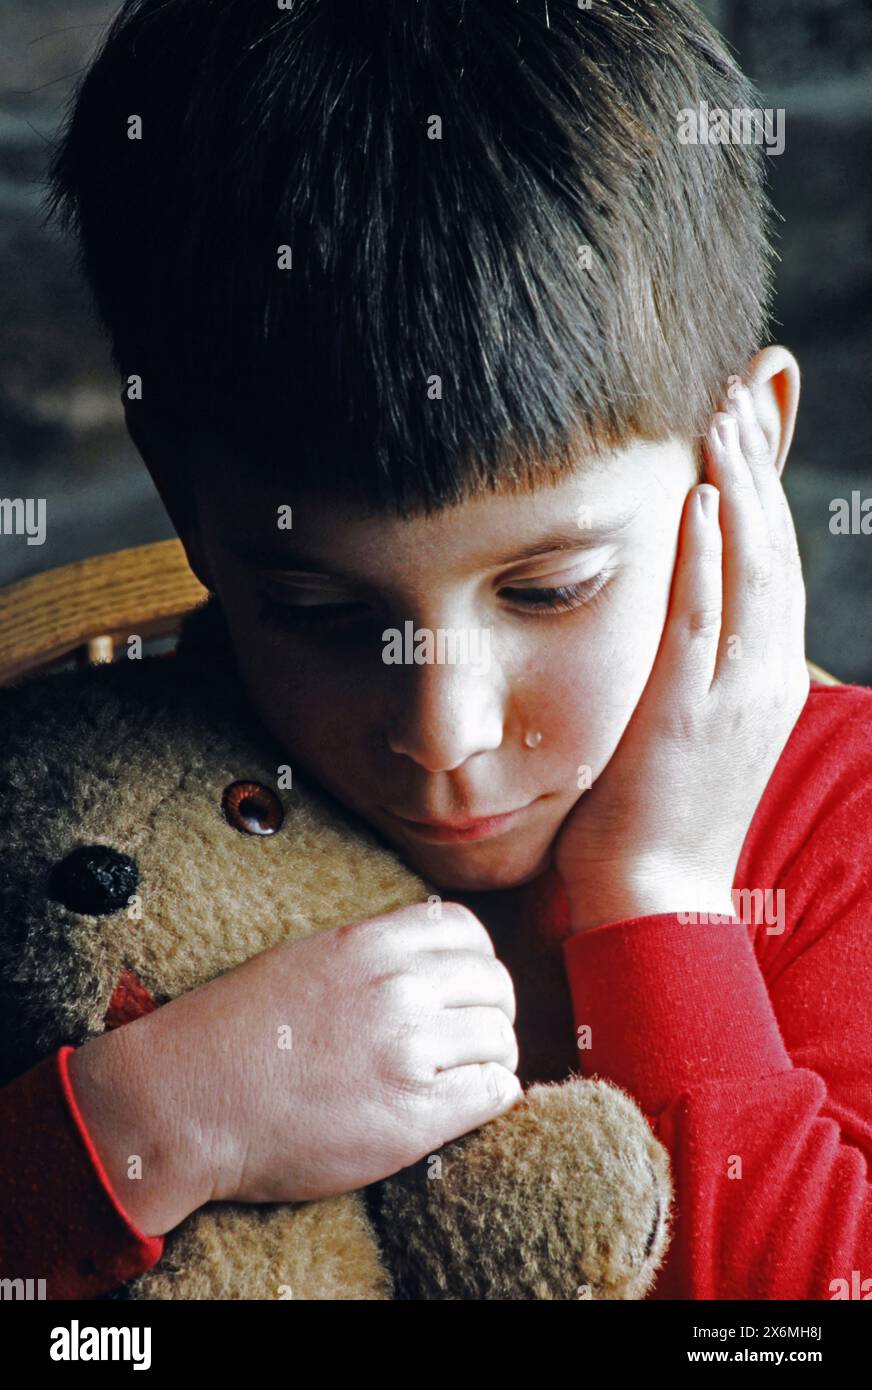 Un ragazzo lacrime e infelice che indossa una camicia rossa viene mostrato mentre abbraccia un orsacchiotto mentre è seduto tranquillamente in casa. Sembra che stia cercando conforto e lo è Foto Stock